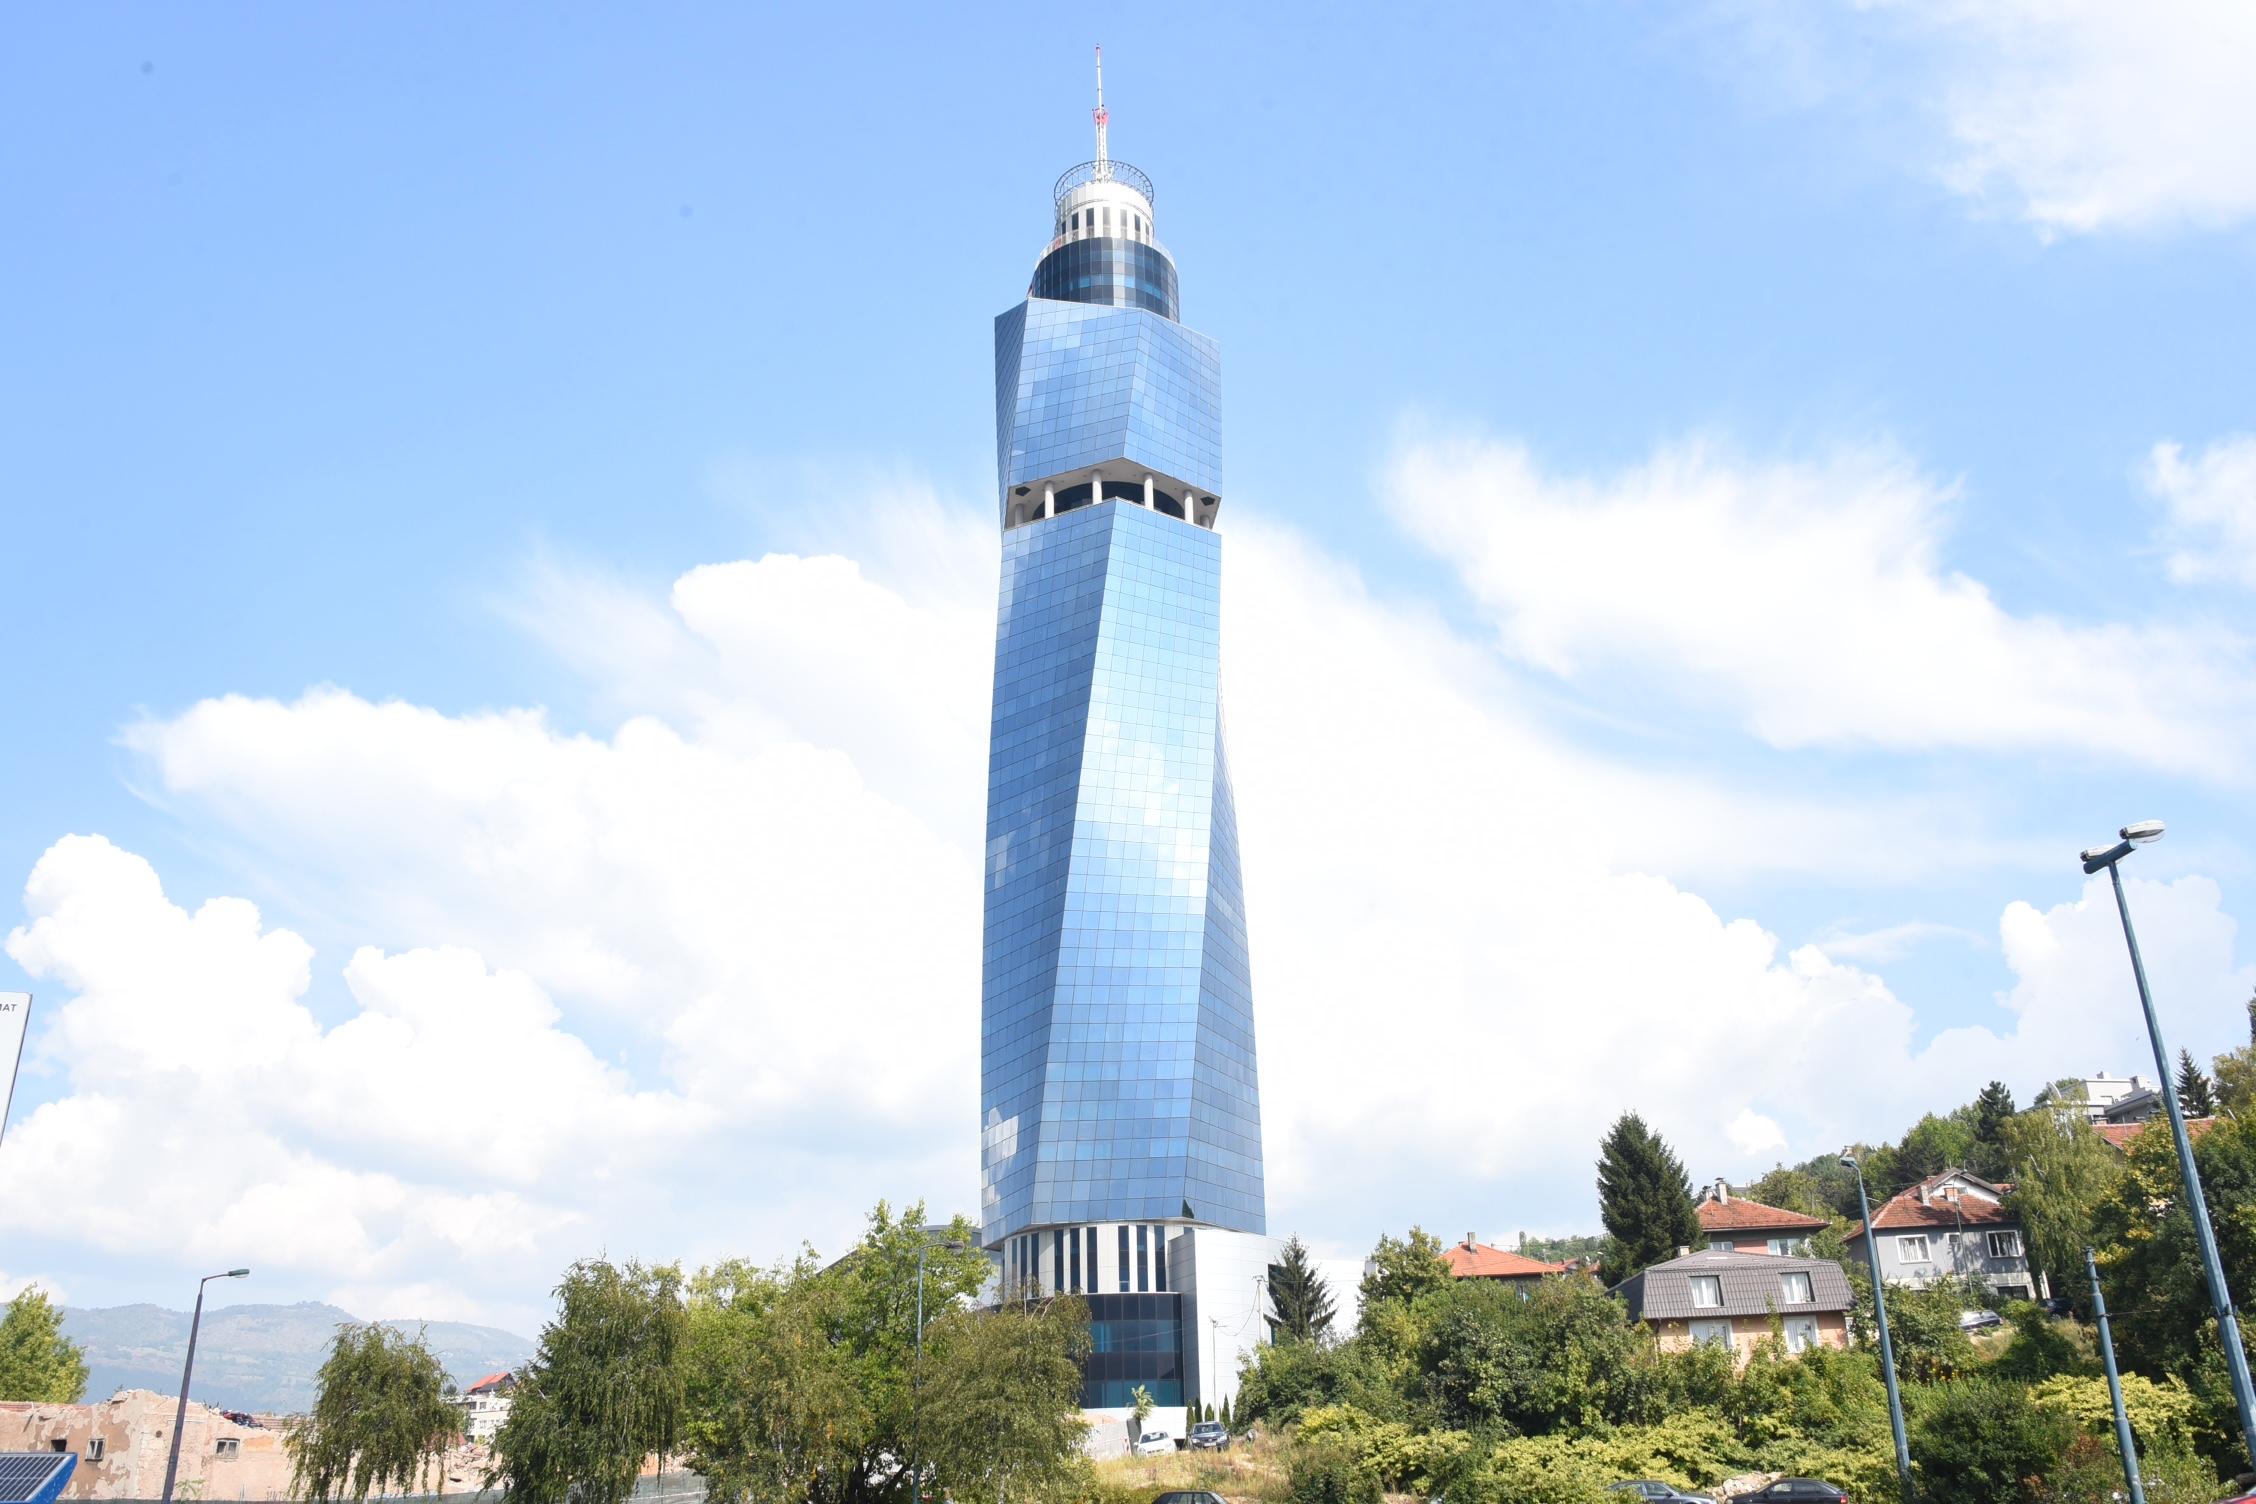 Visina od 175 metara s antenom, bez nje 143 metra, čini ovaj objekt najvišim u regionu - Avaz